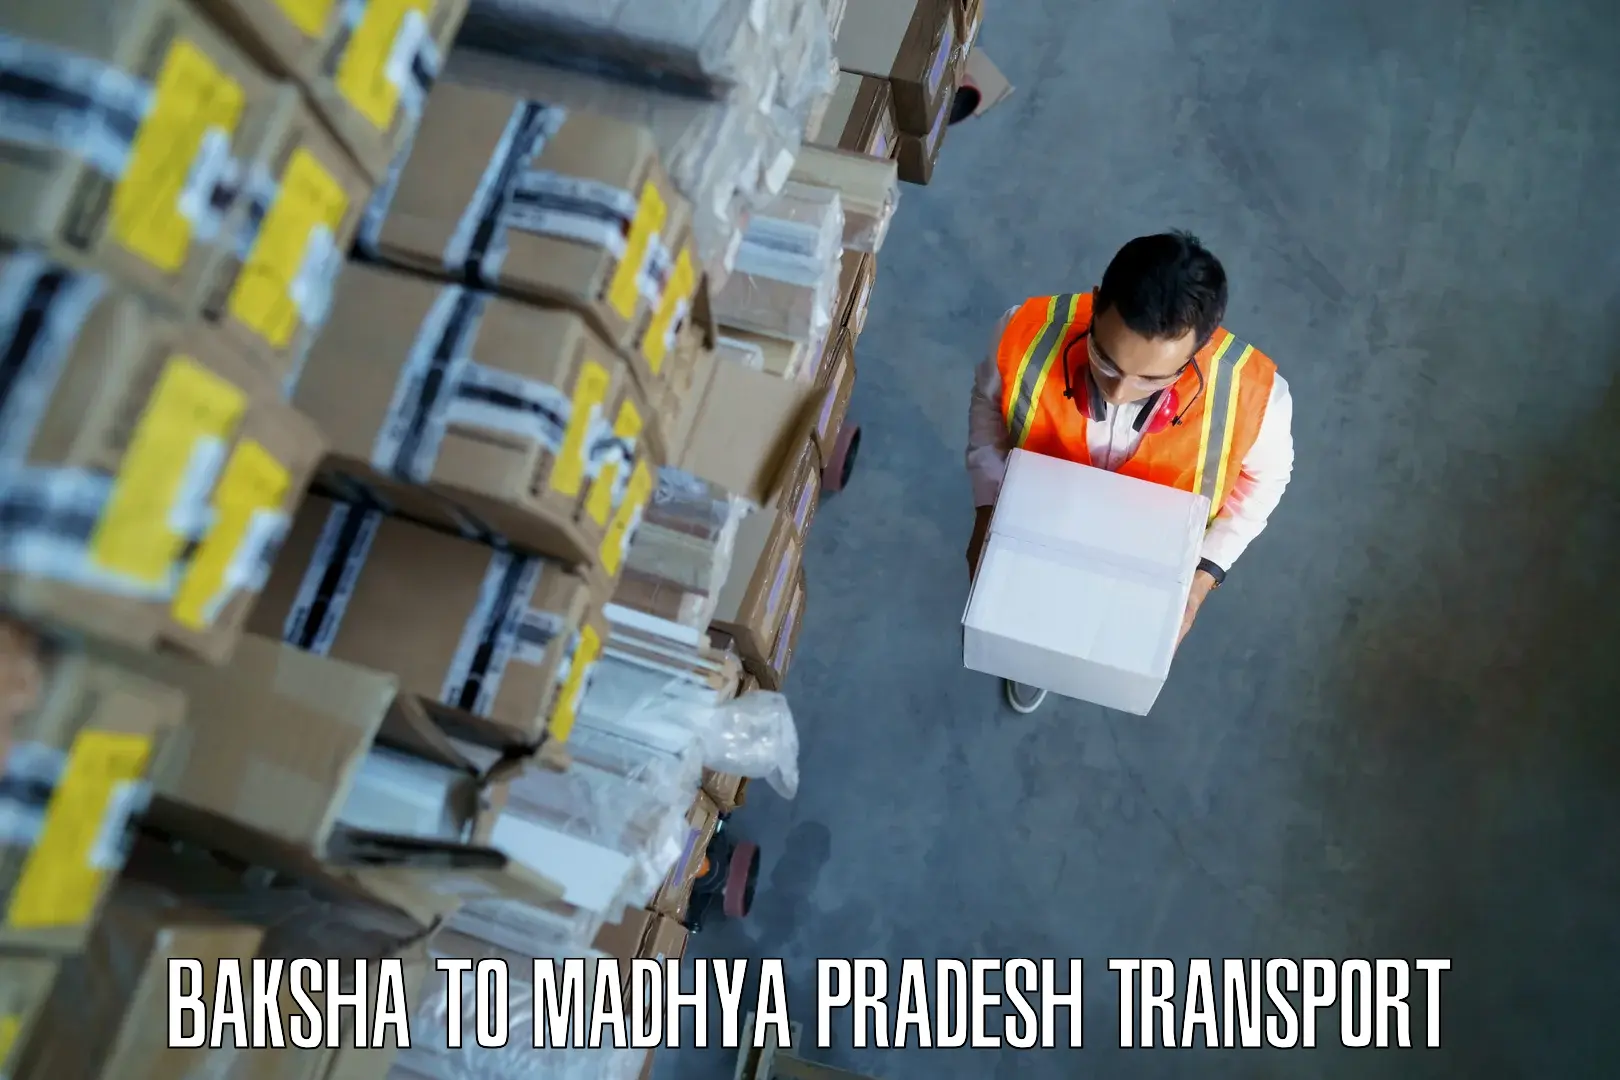 Goods delivery service Baksha to Madhya Pradesh